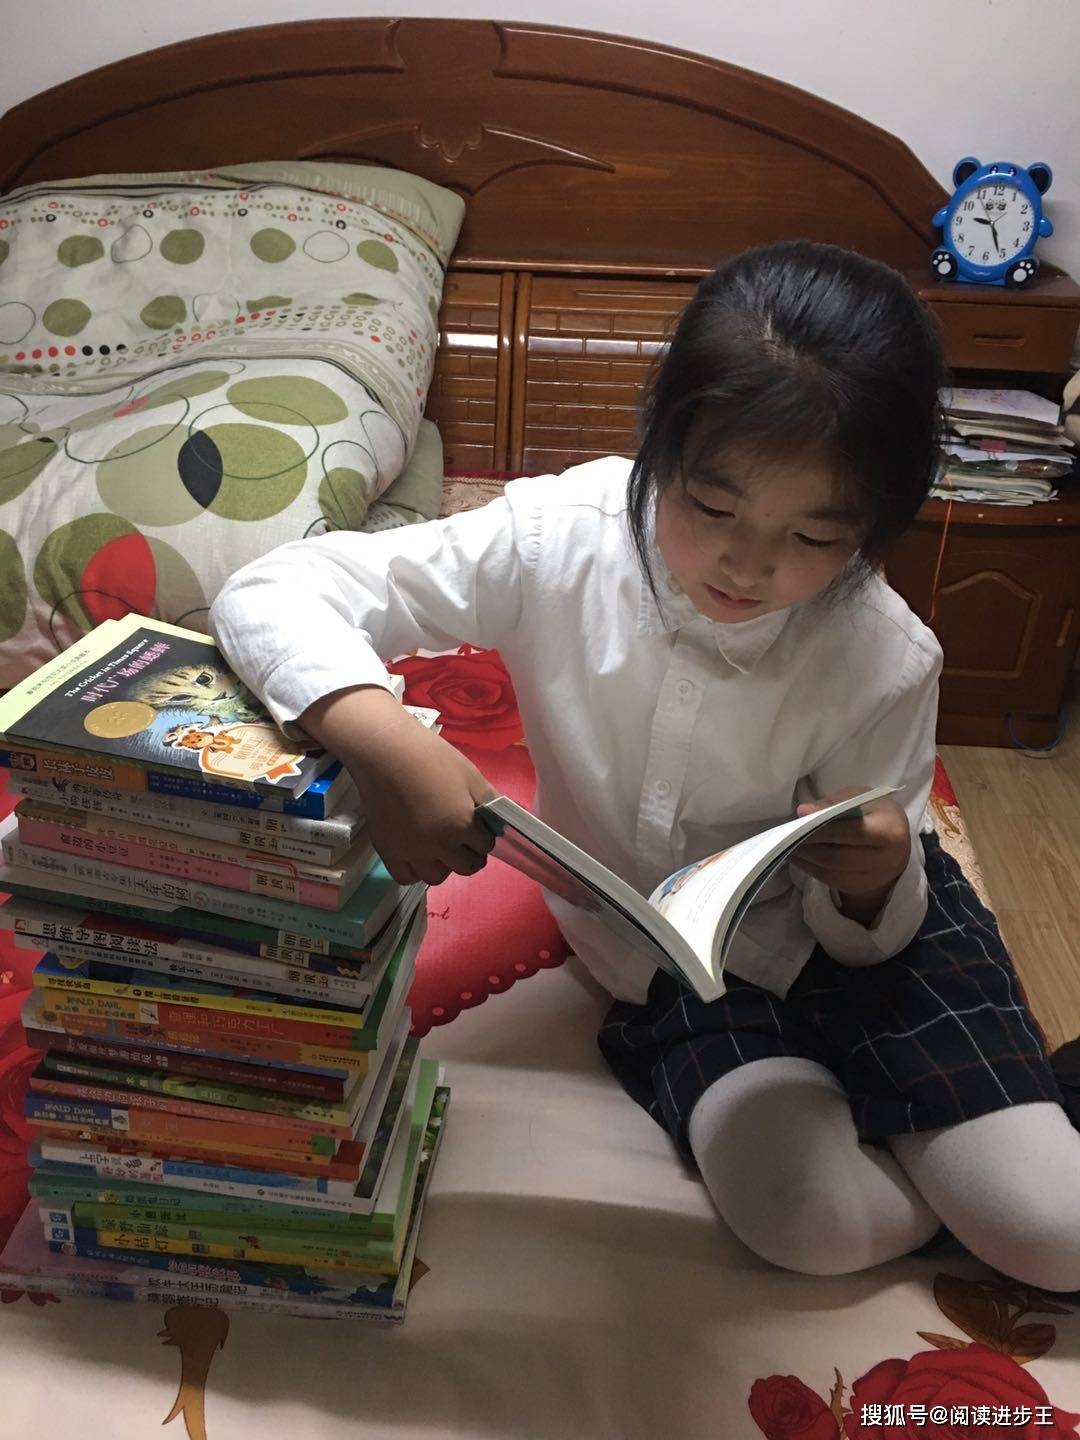 坚持创造成功阅读王三年级小学员通过16本书的阅读养成习惯